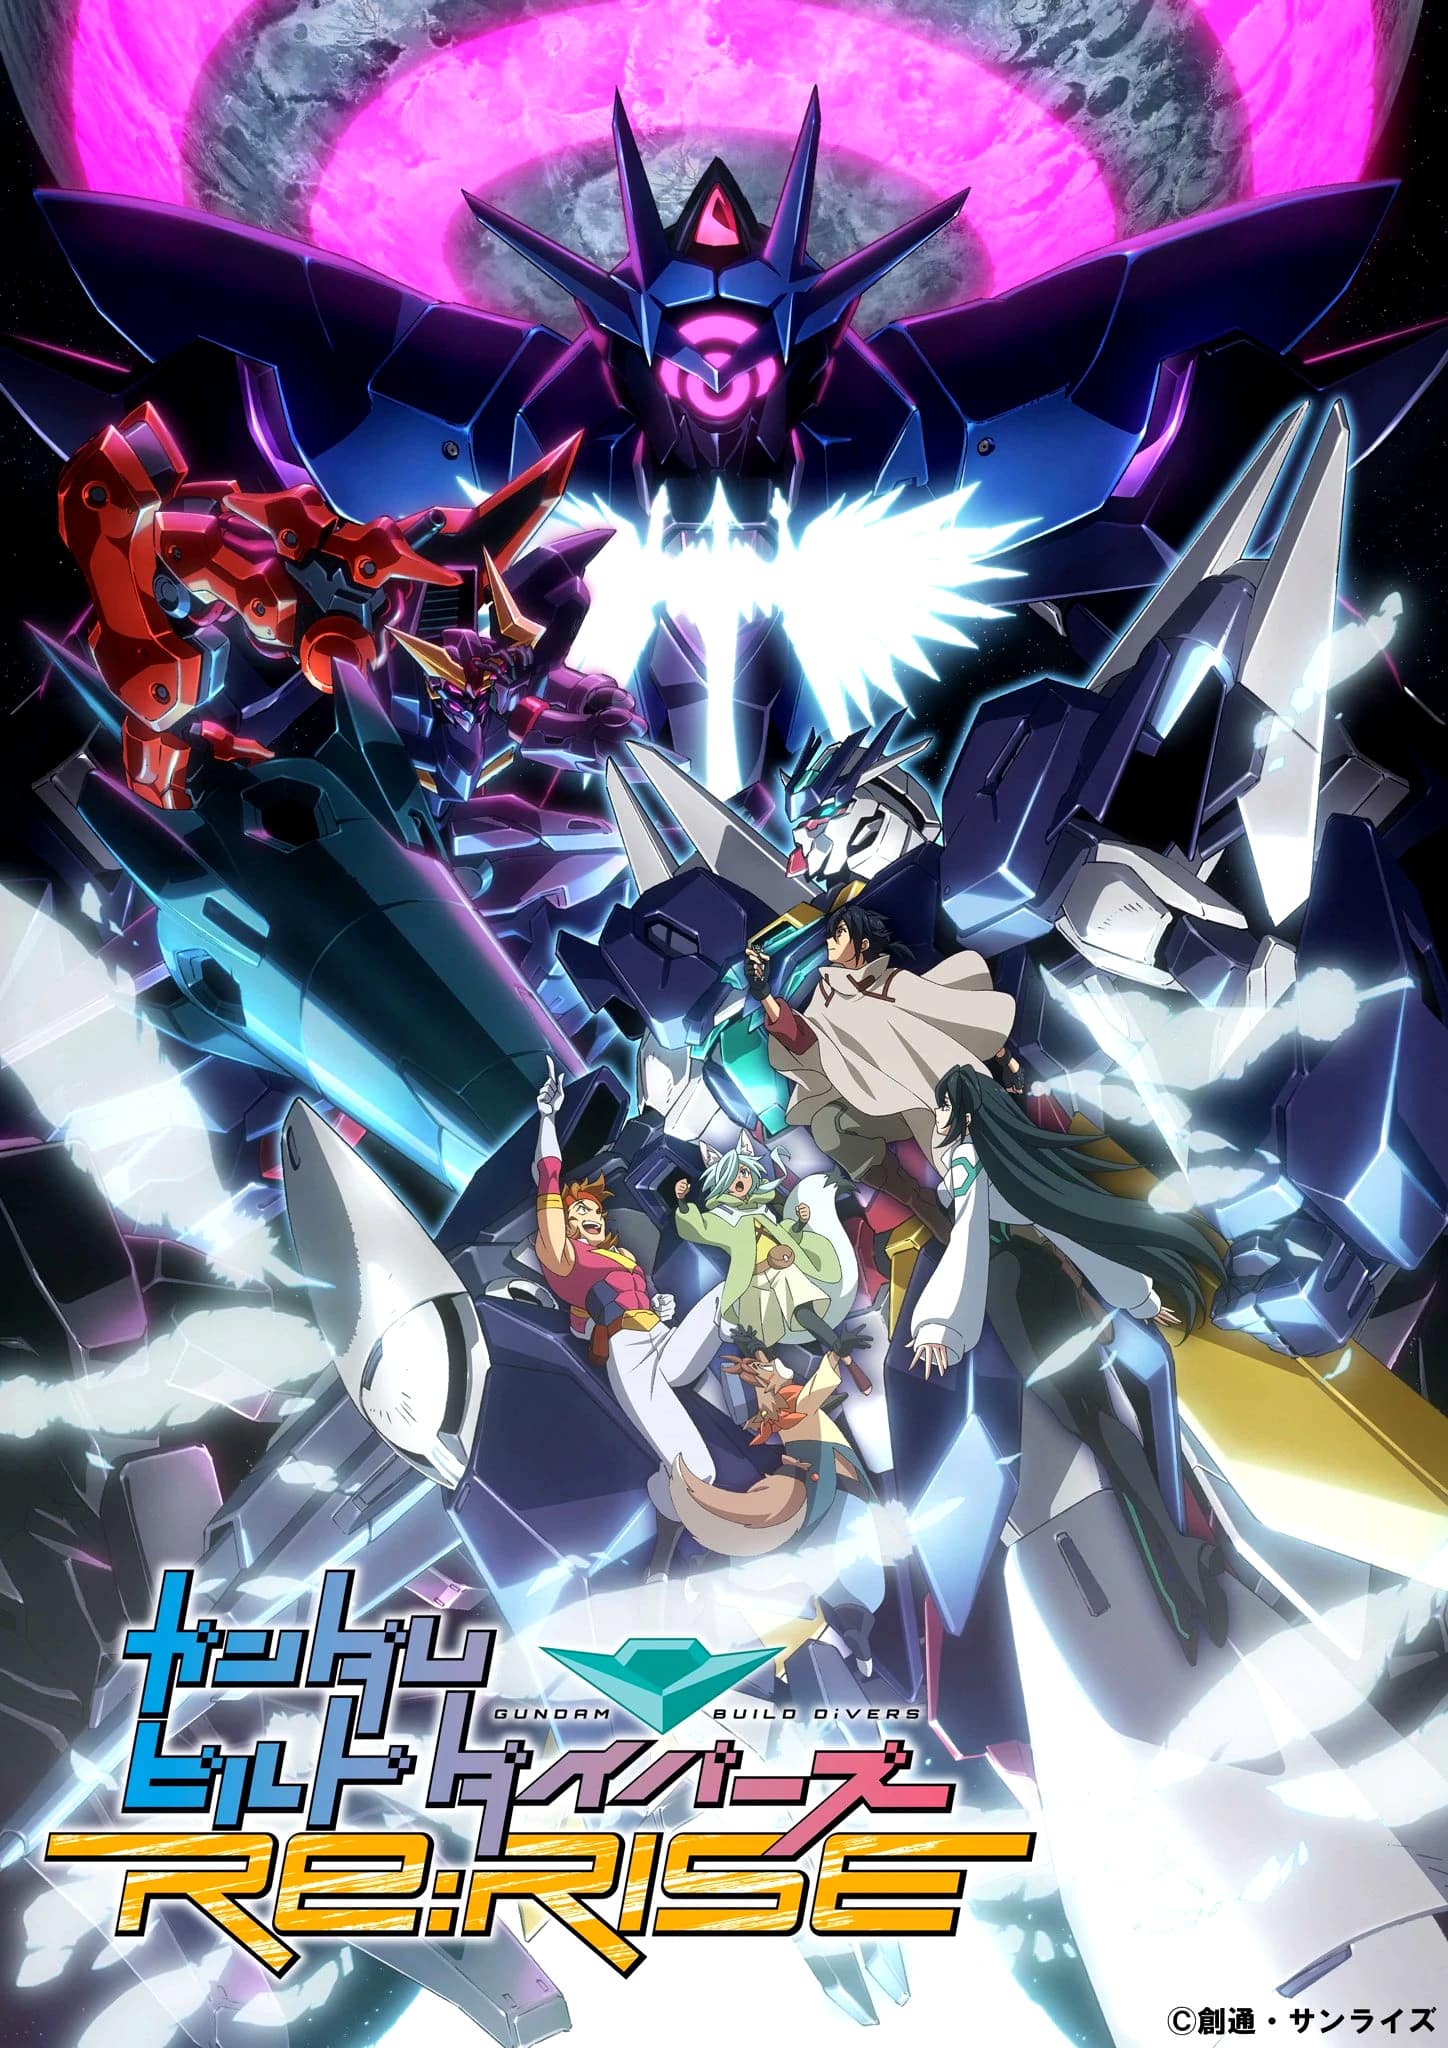 Visuel clé pour la saison 2 de l'anime Gundam Build Divers Re:Rise